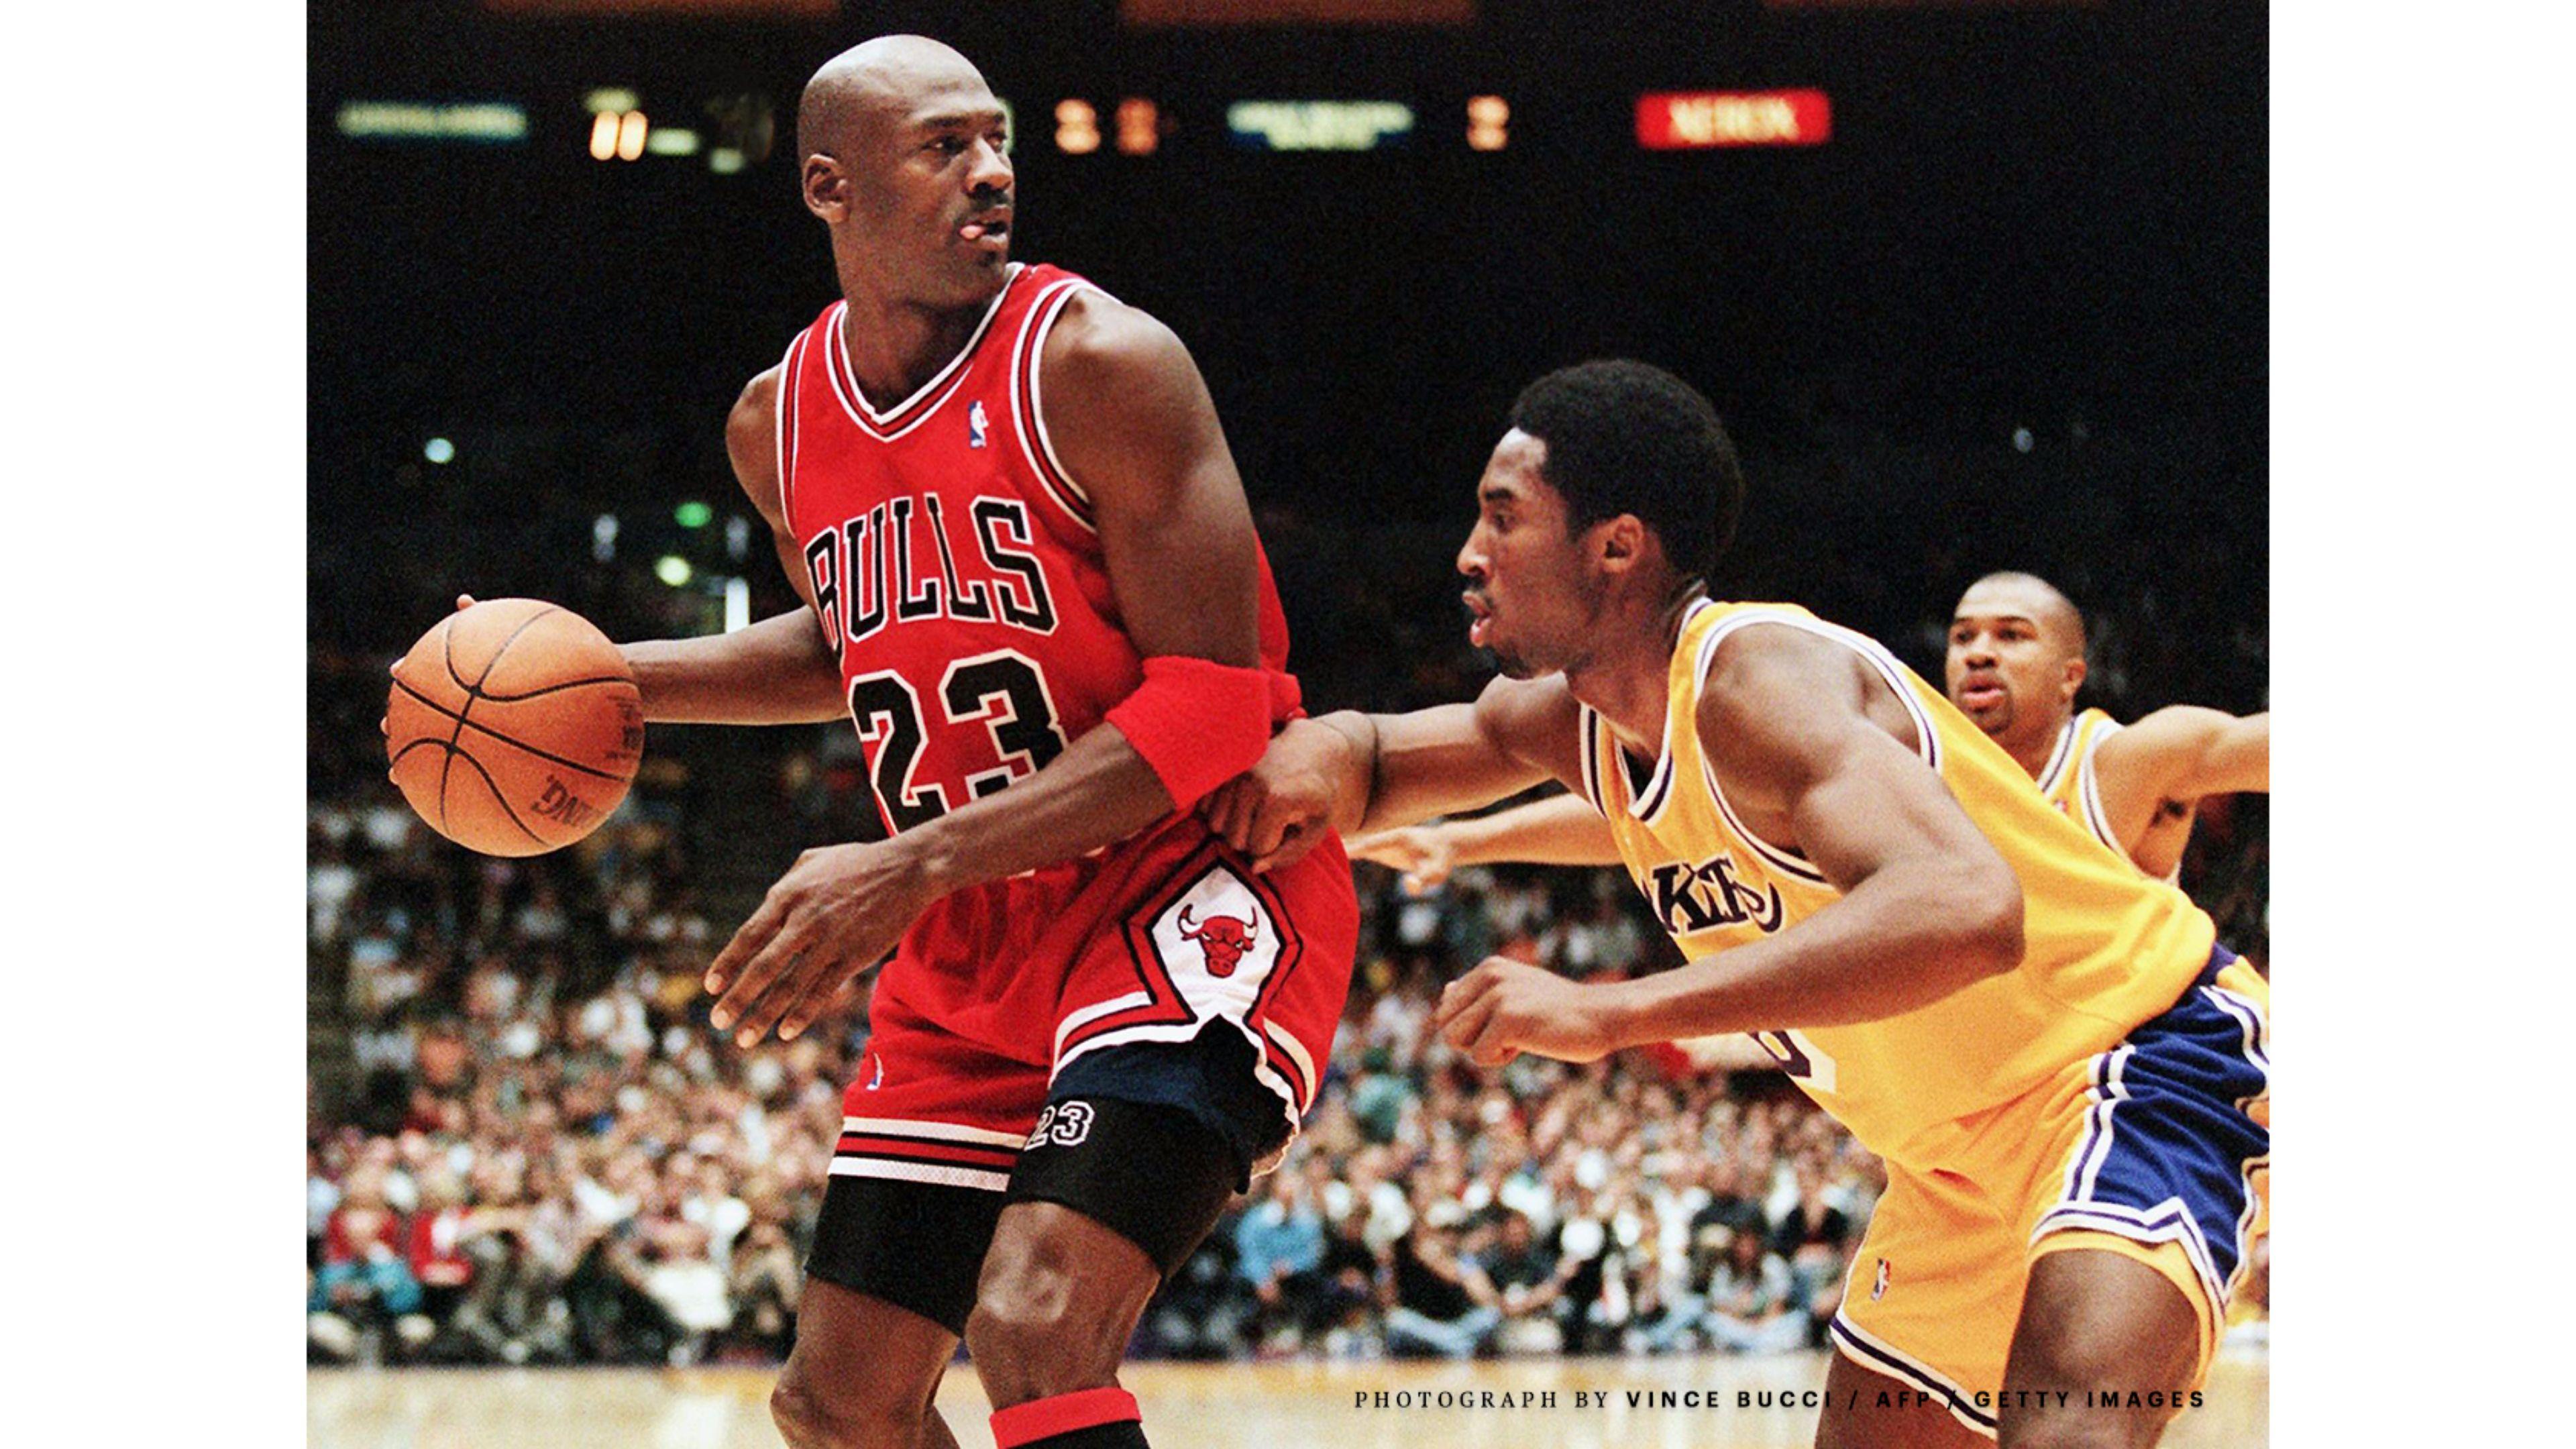 Jordan vs La Lakers Kobe Bryant 4K Wallpaper. Free 4K Wallpaper